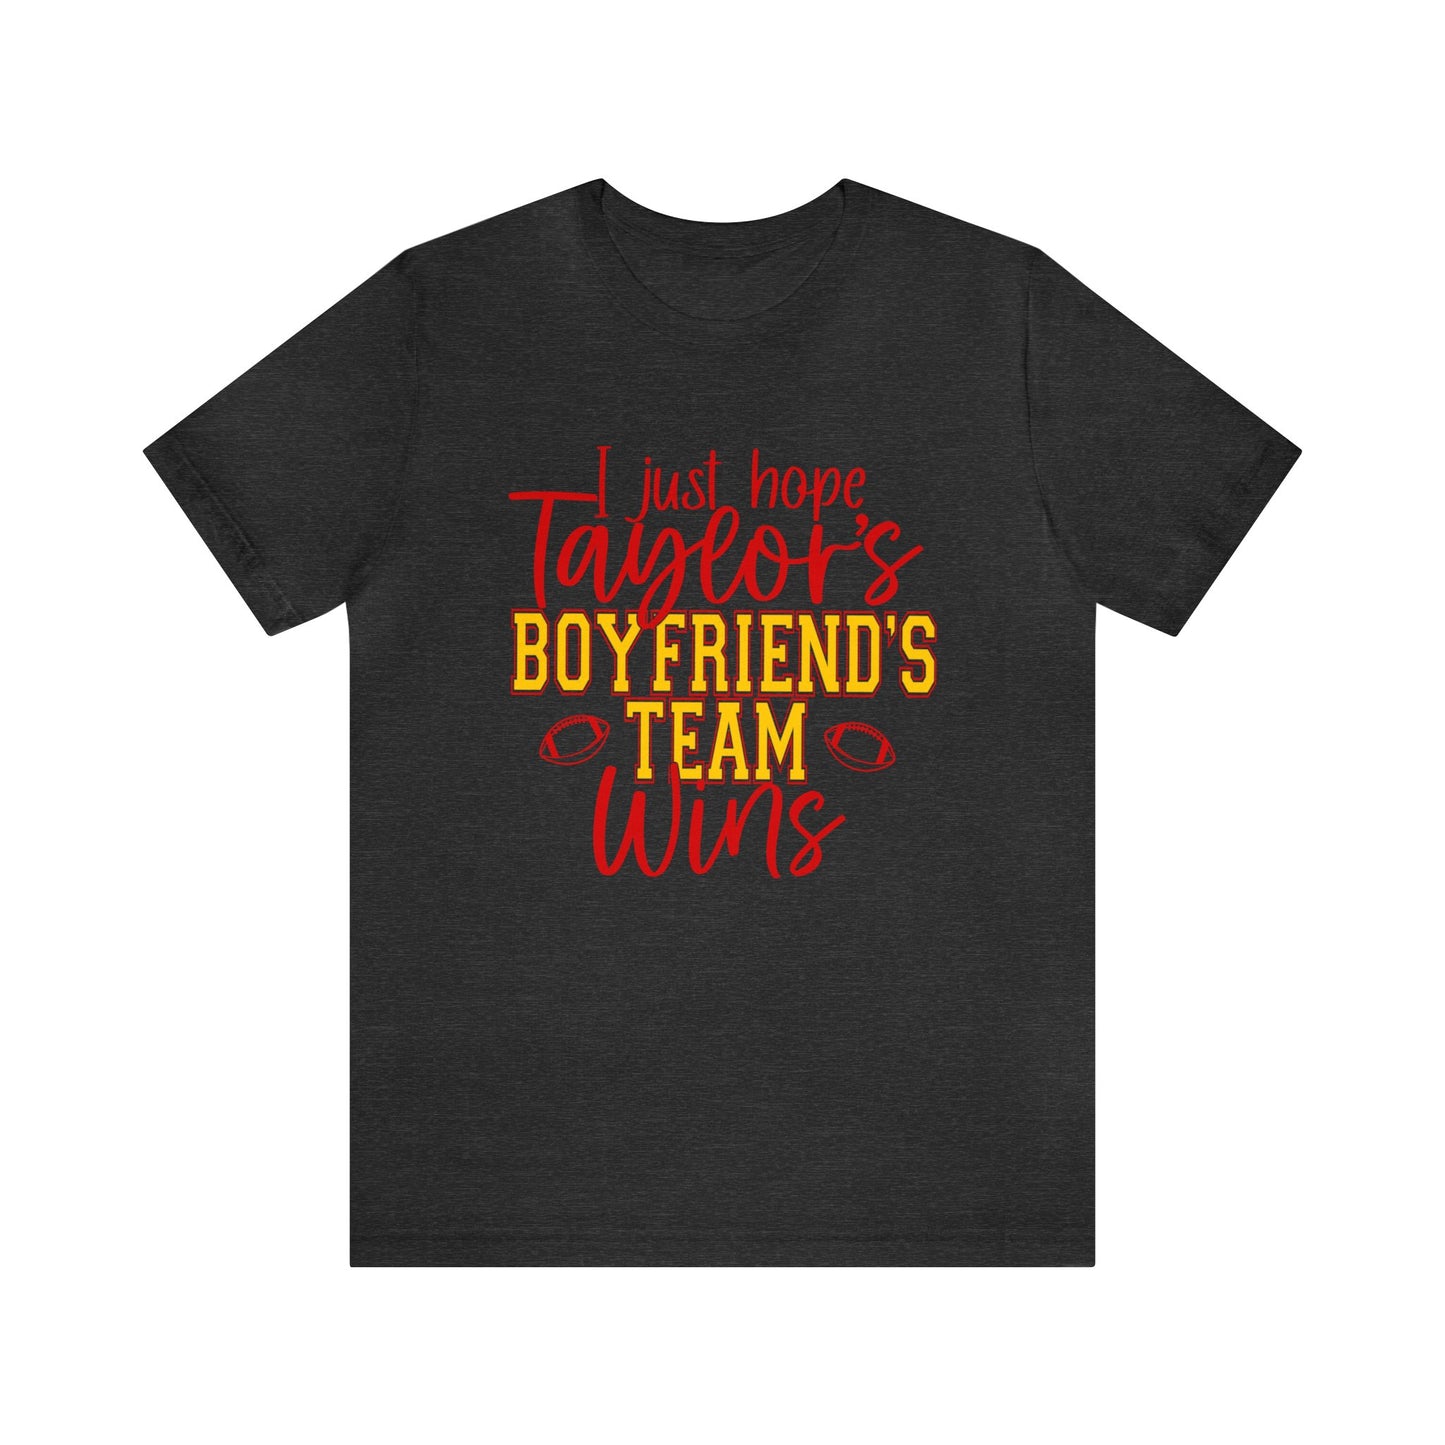 Taylor's Boyfriend's Team Graphic Tee